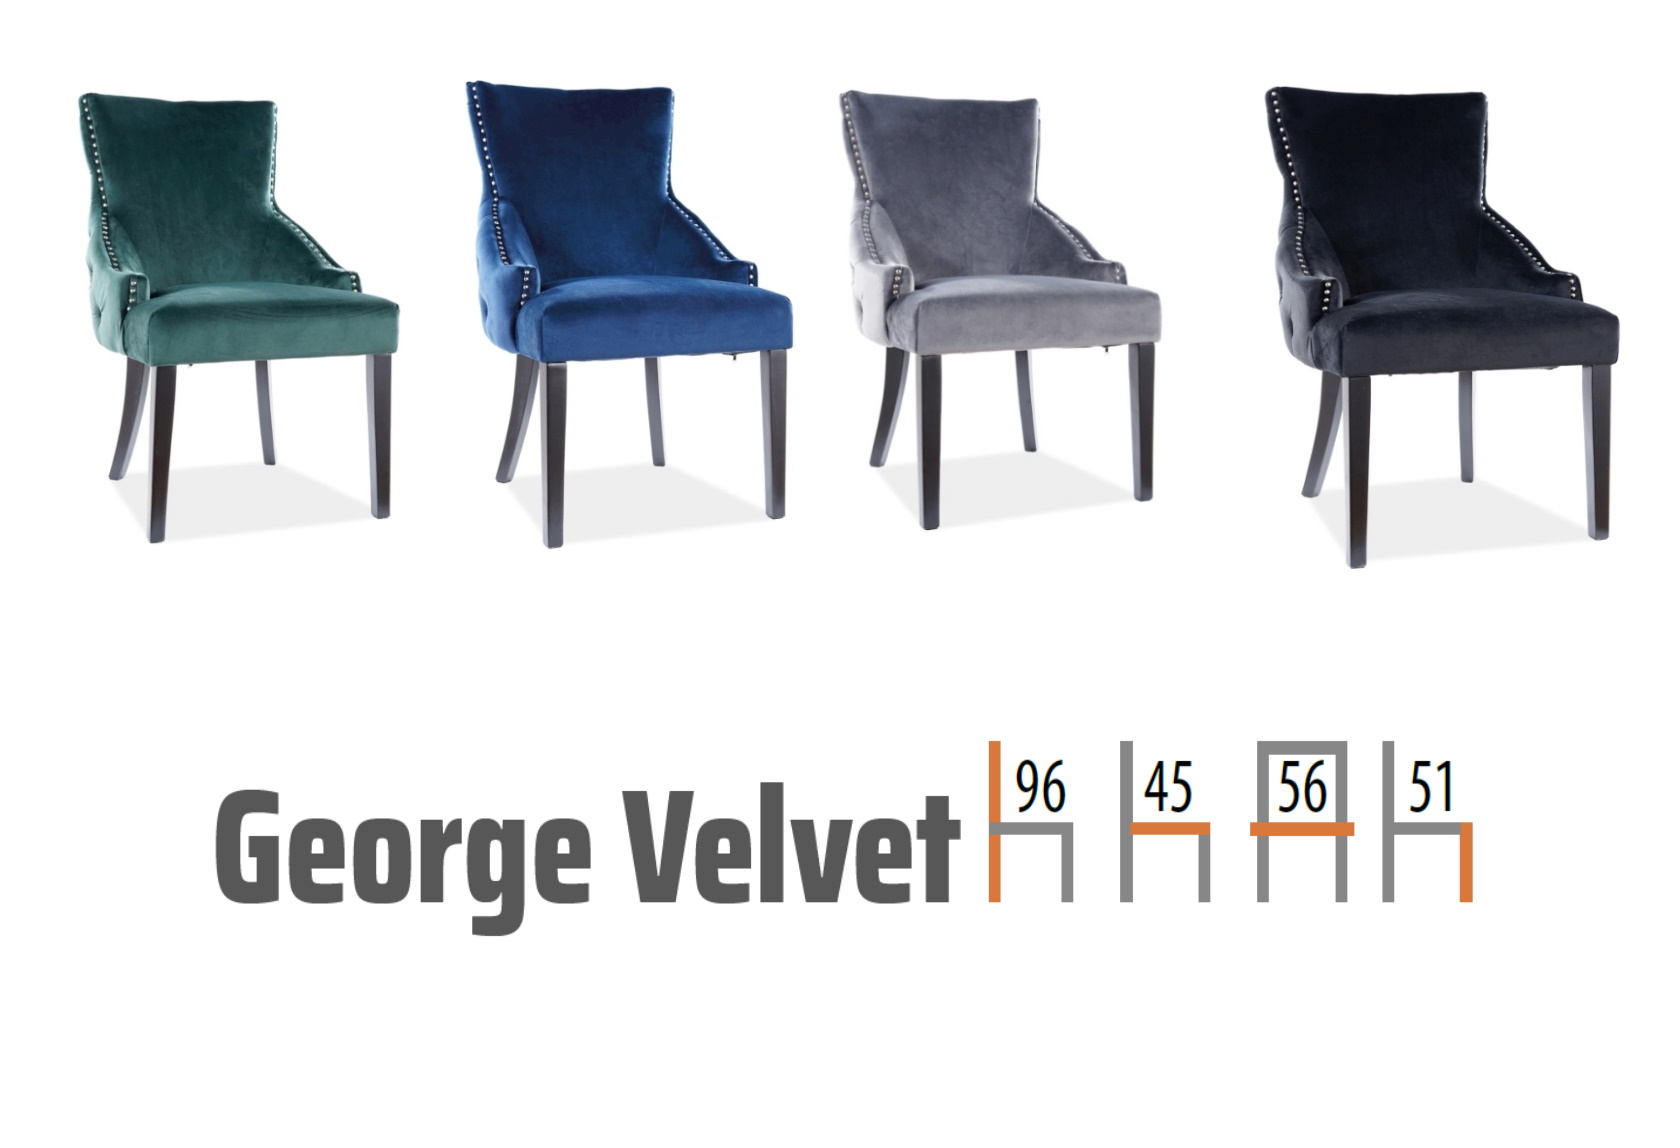 krzesła tapicerowane z aksamitu george velvet, wymiary